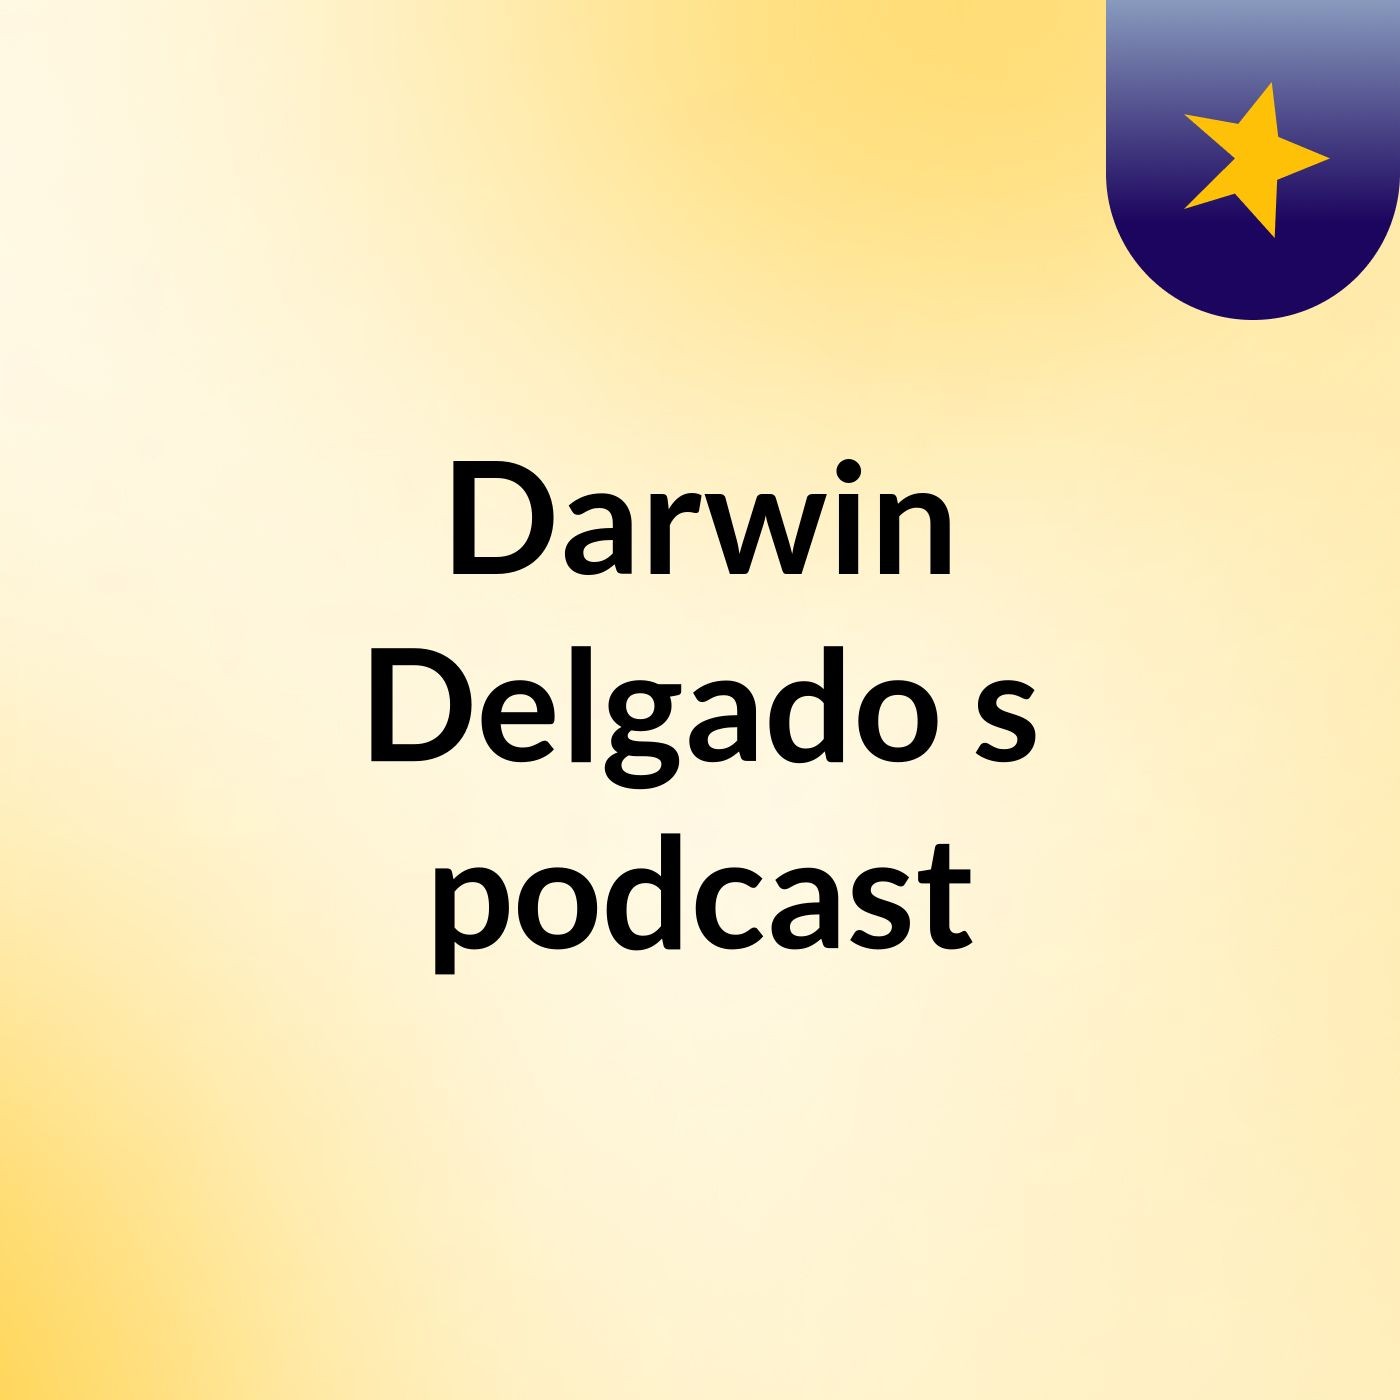 Darwin Delgado's podcast